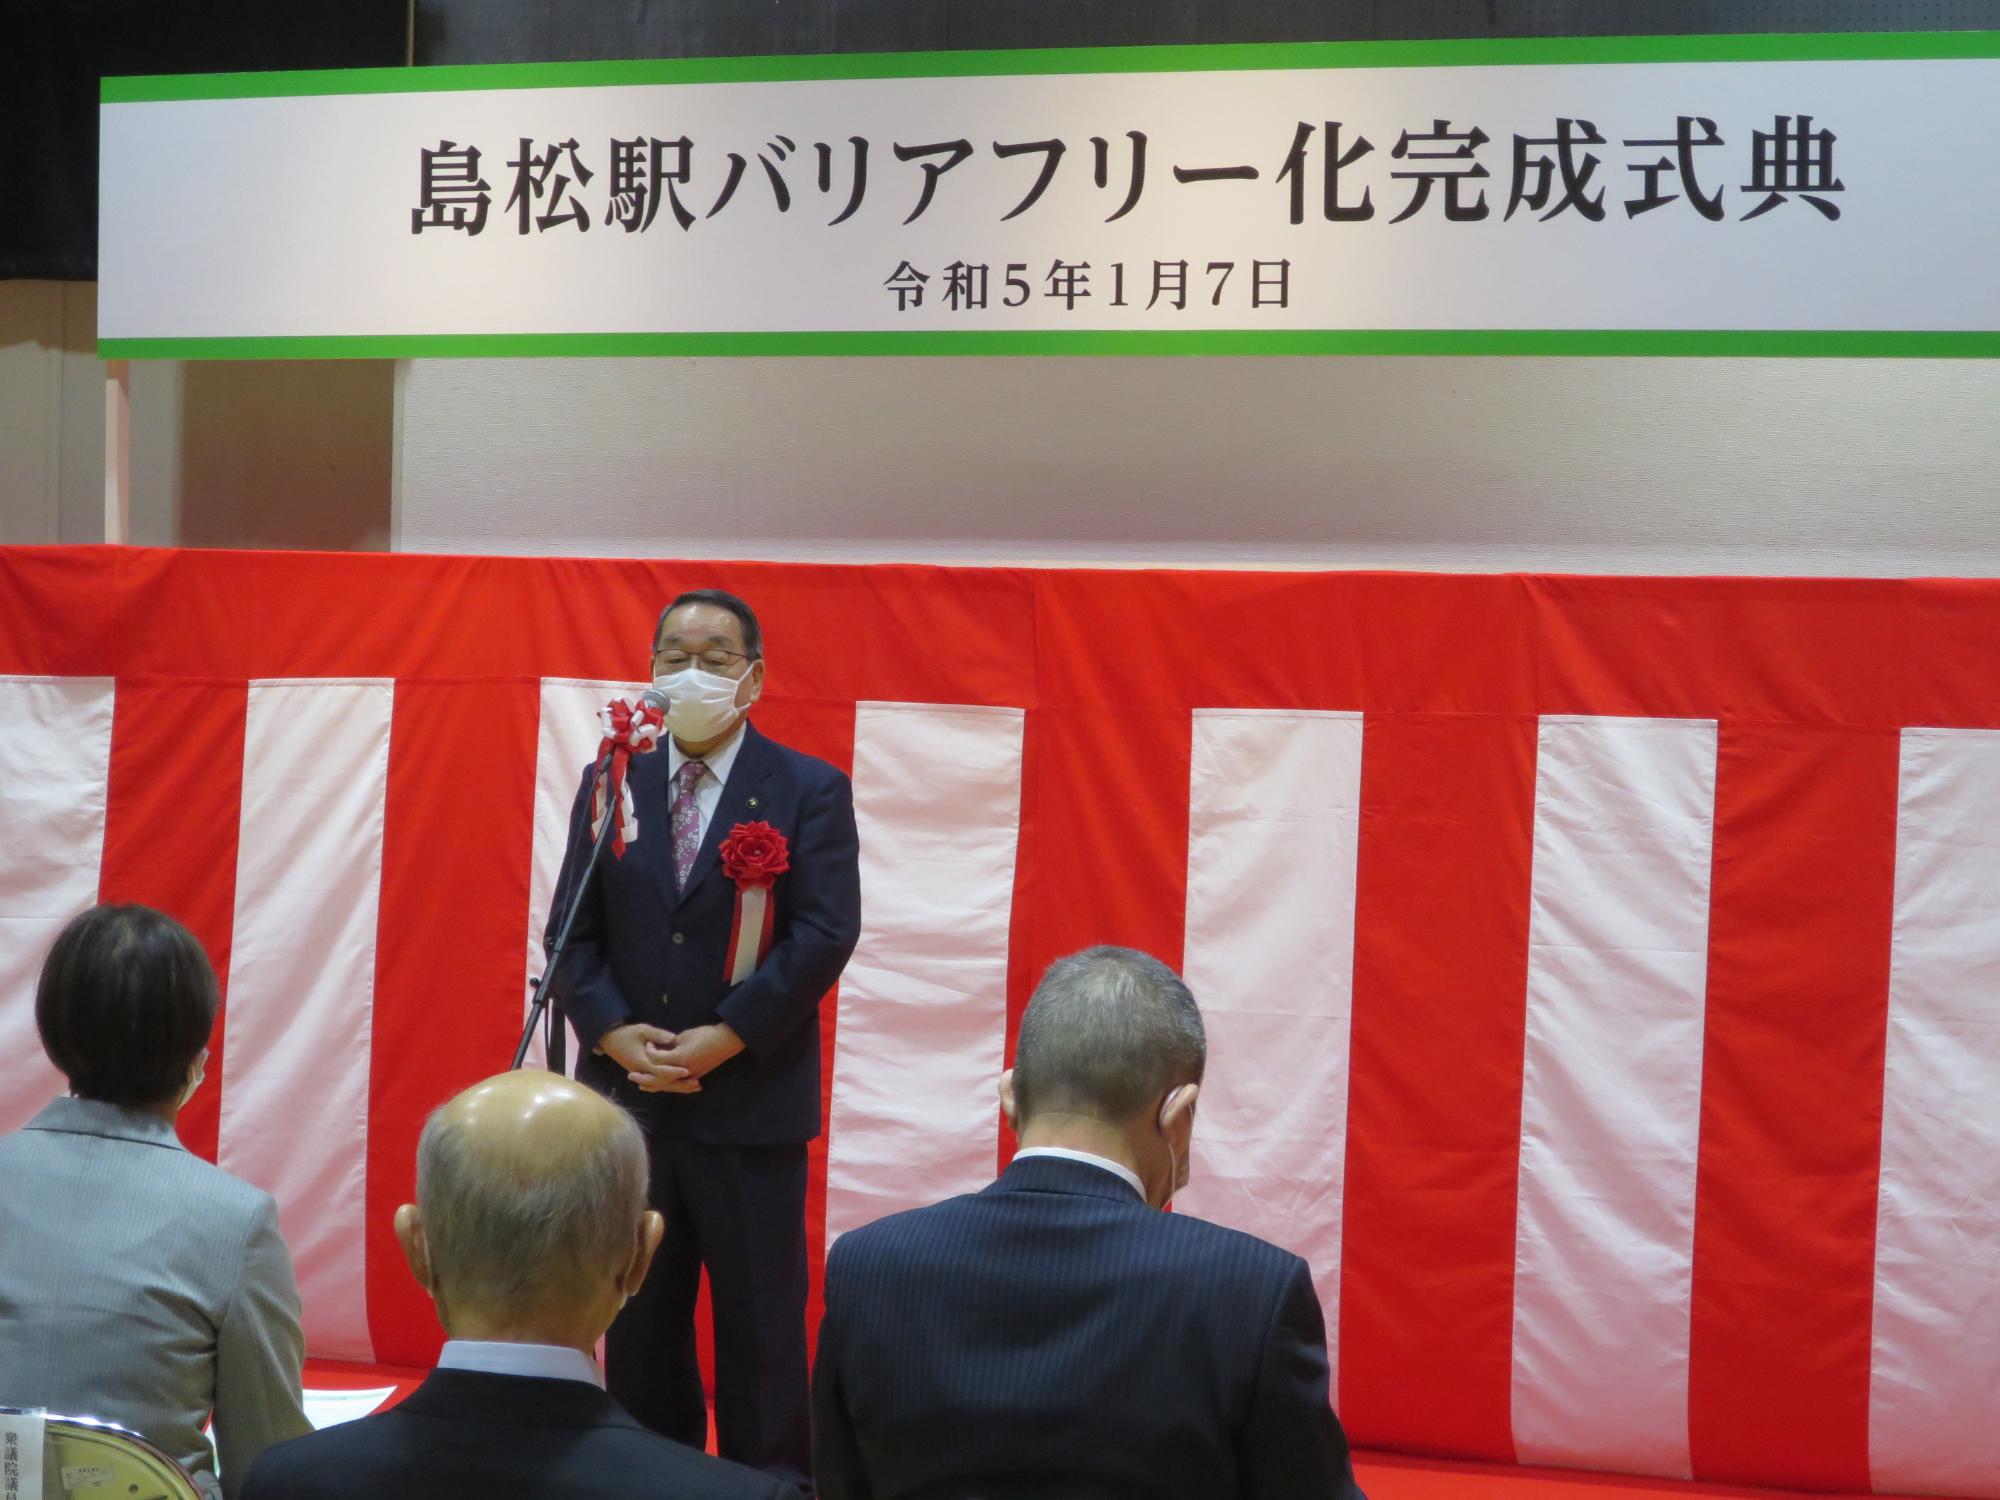 島松駅バリアフリー化完成式典で挨拶する原田市長